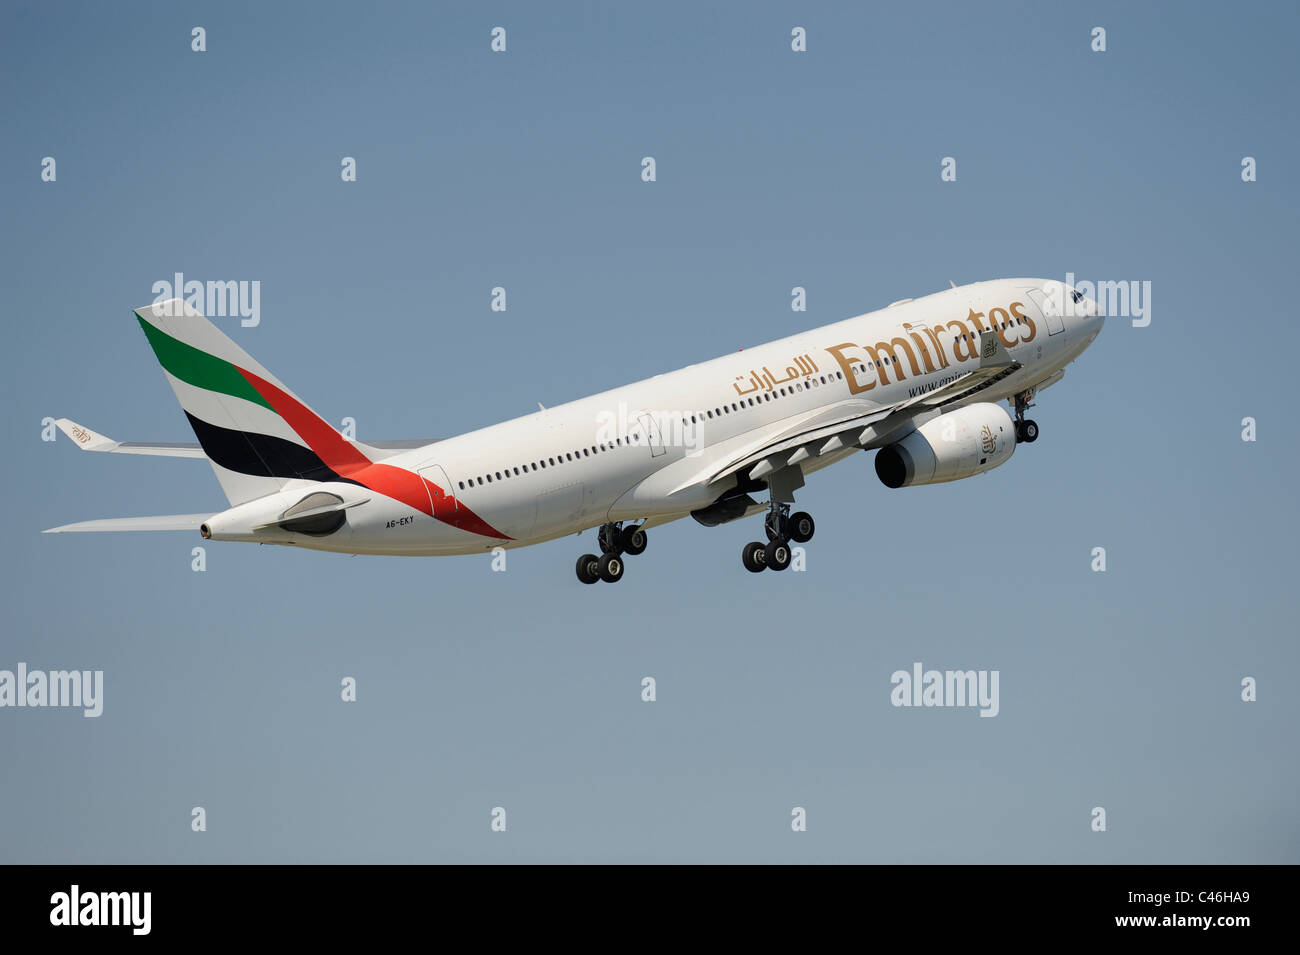 Avion Airbus de la compagnie aérienne Emirates au décollage de l'aéroport de Munich en Allemagne Banque D'Images